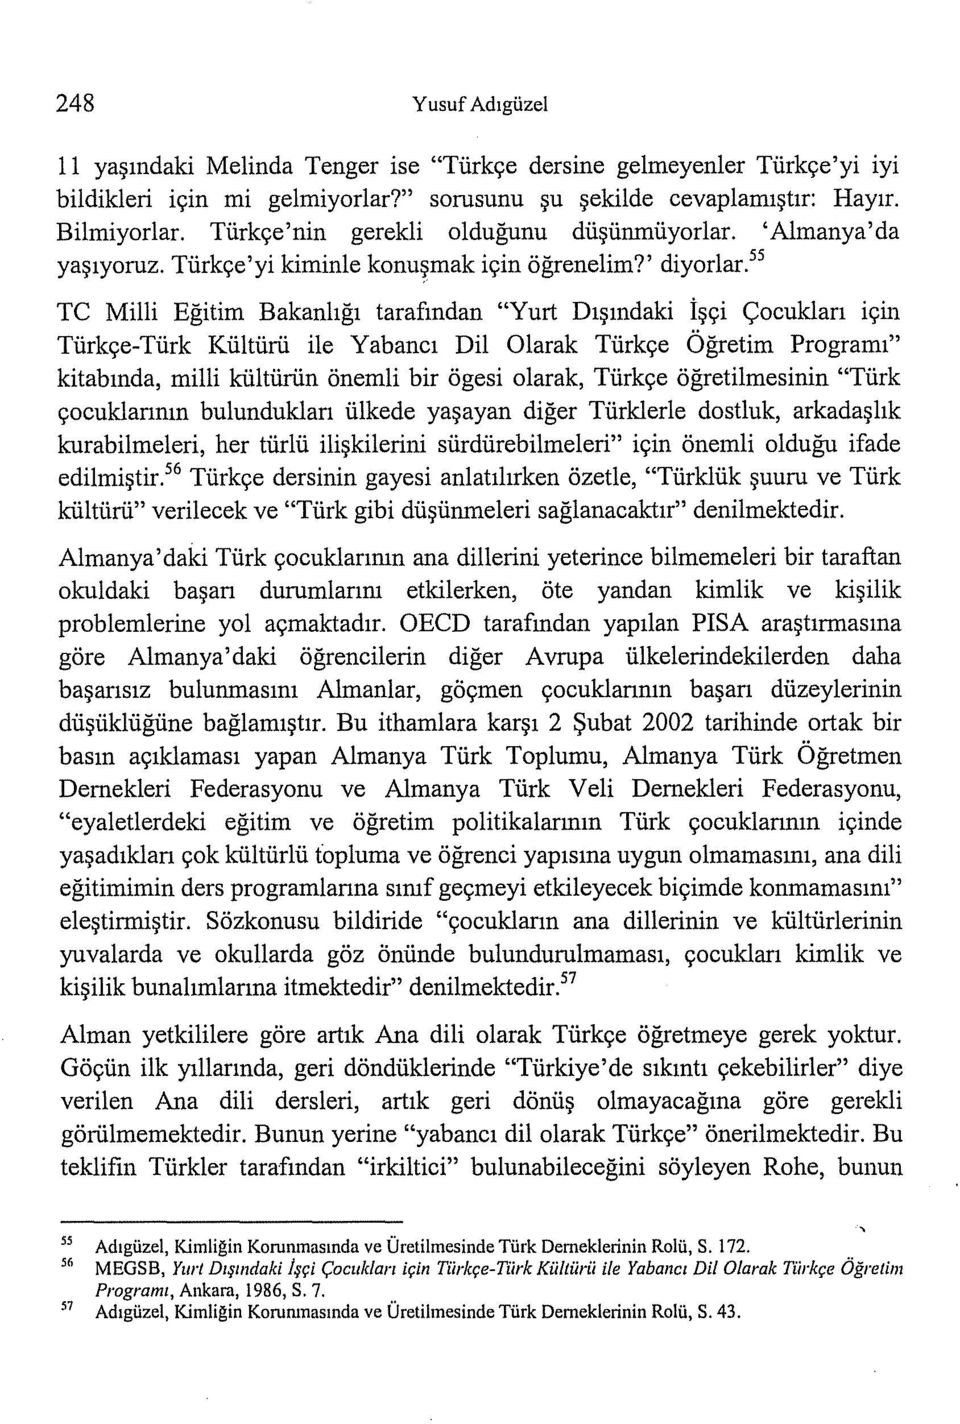 55 TC Milli Eğitim Bakanlığı tarafından "Yurt Dışındaki İşçi Çocukları ıçın Türkçe-Türk Kültürü ile Yabancı Dil Olarak Türkçe Öğretim Programı" kitabında, milli kültürün önemli bir ögesi olarak,